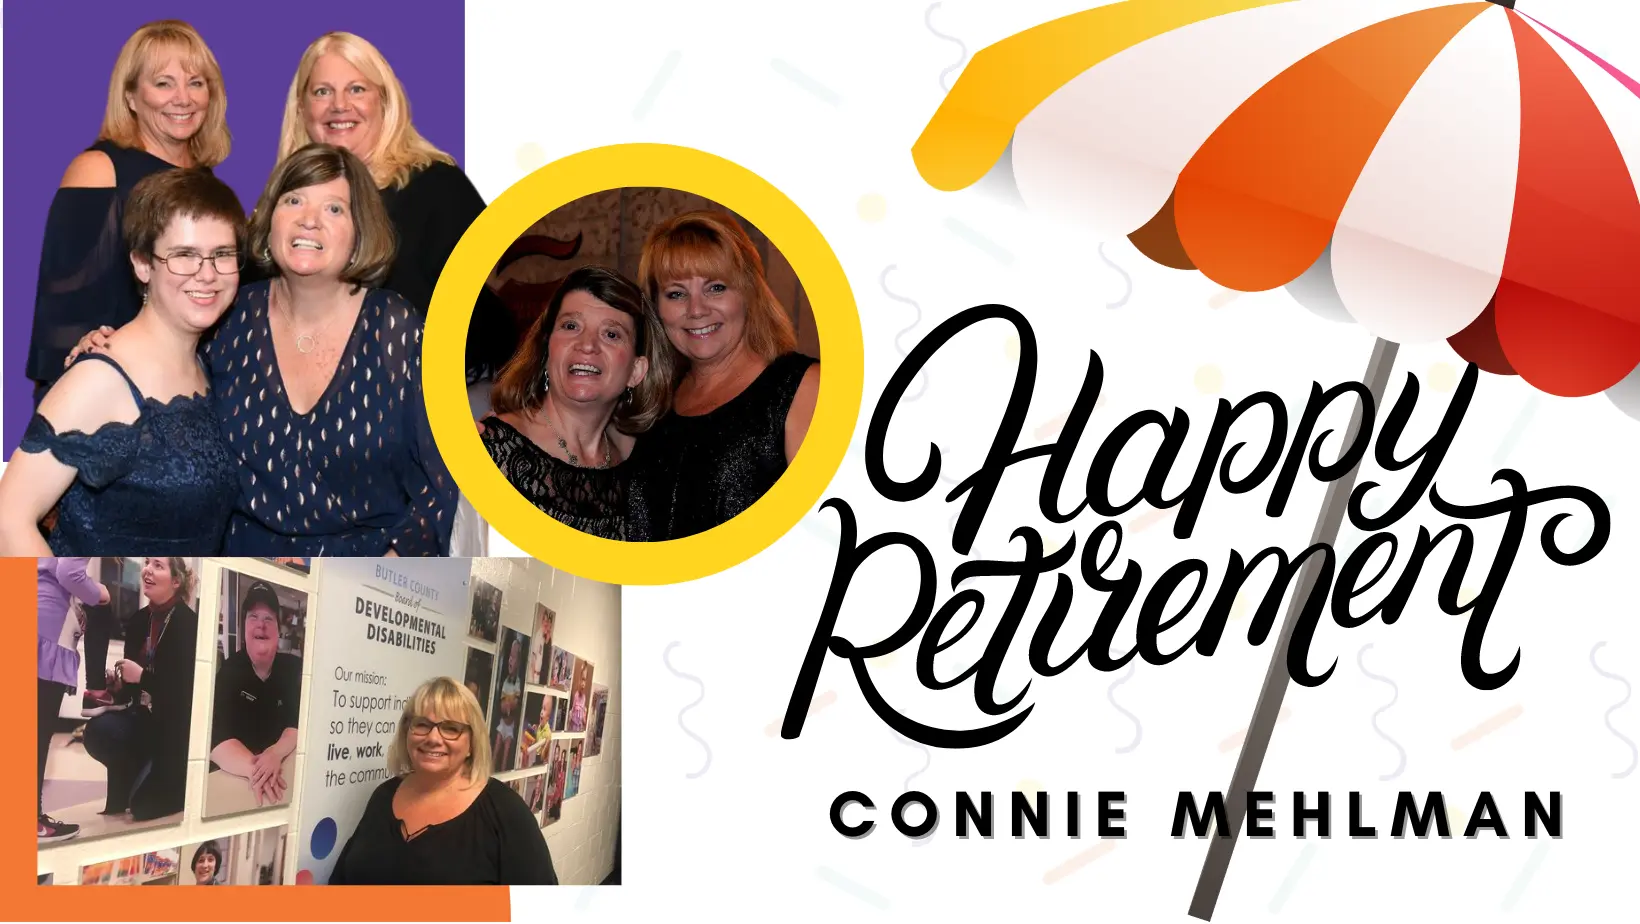 Connie Mehlman Retirement